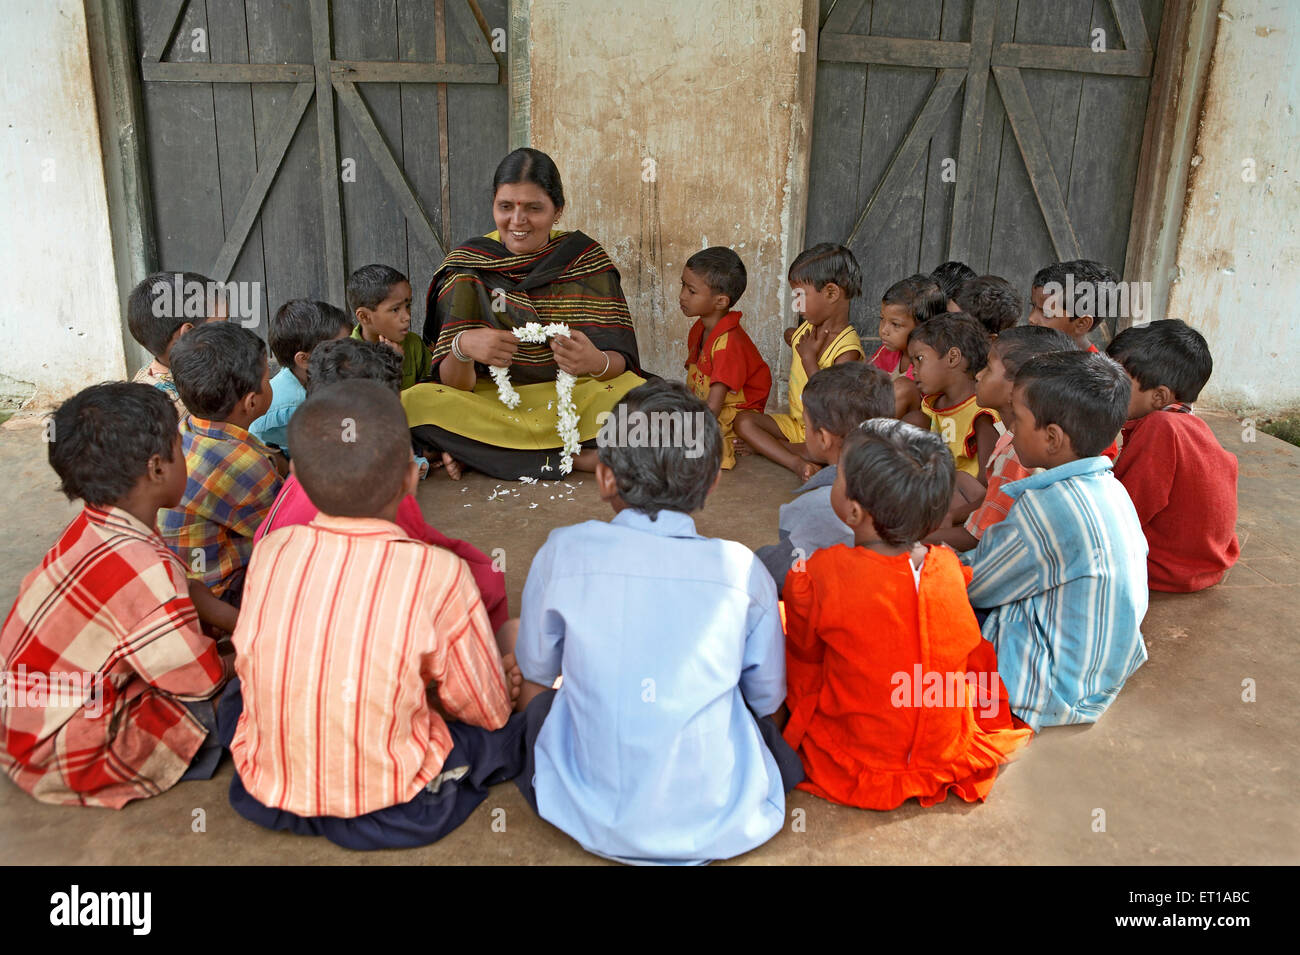 Lehrer in ländlichen Schule mit Kindern soziale Initiative von NGO Chinmaya Organisation für ländliche Entwicklung Indien Asien gestartet Stockfoto